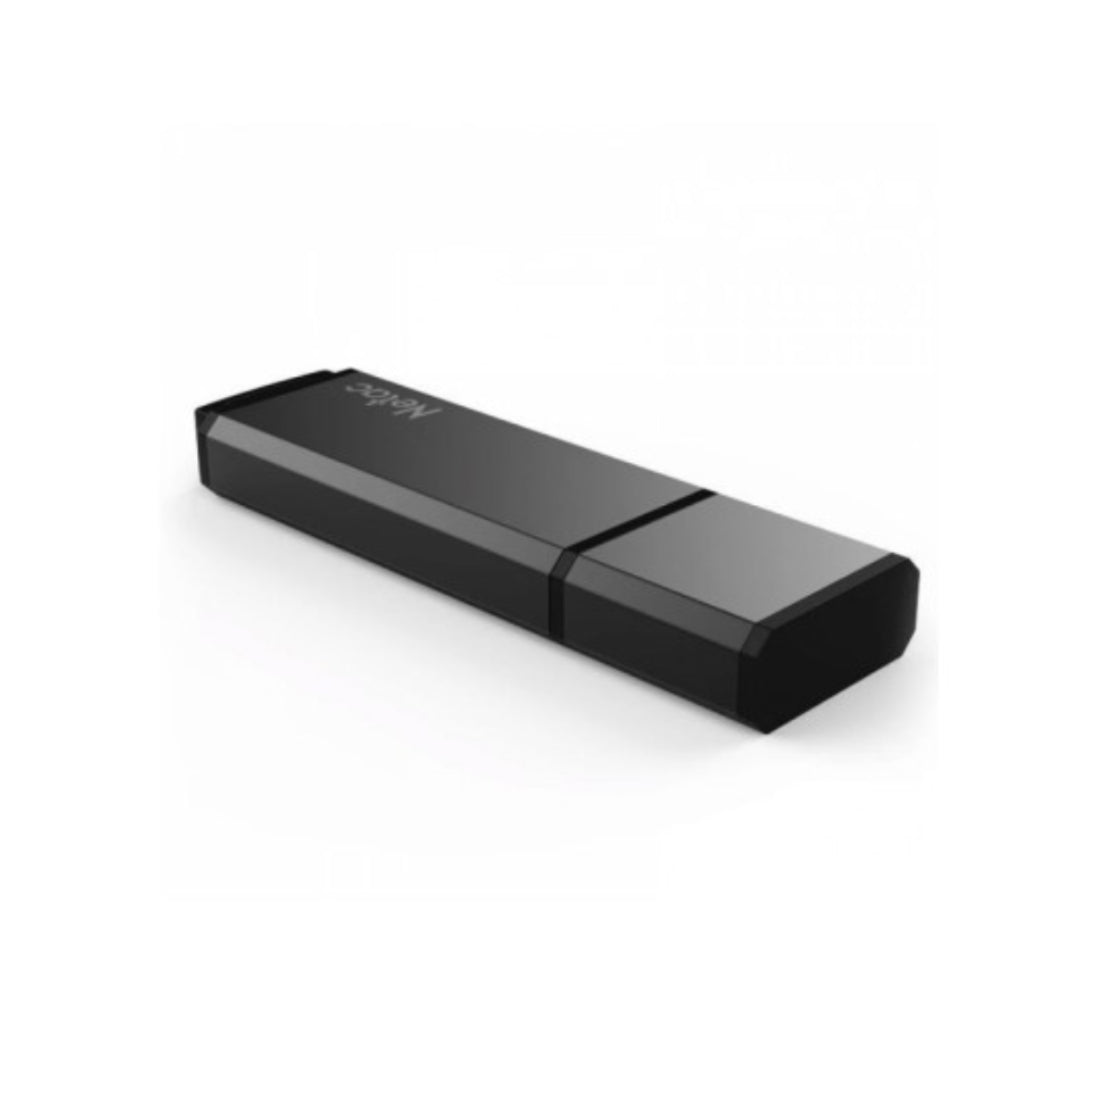 Netac U351 64GB USB 3.0 Flash Drive  - مساحة تخزين - Store 974 | ستور ٩٧٤